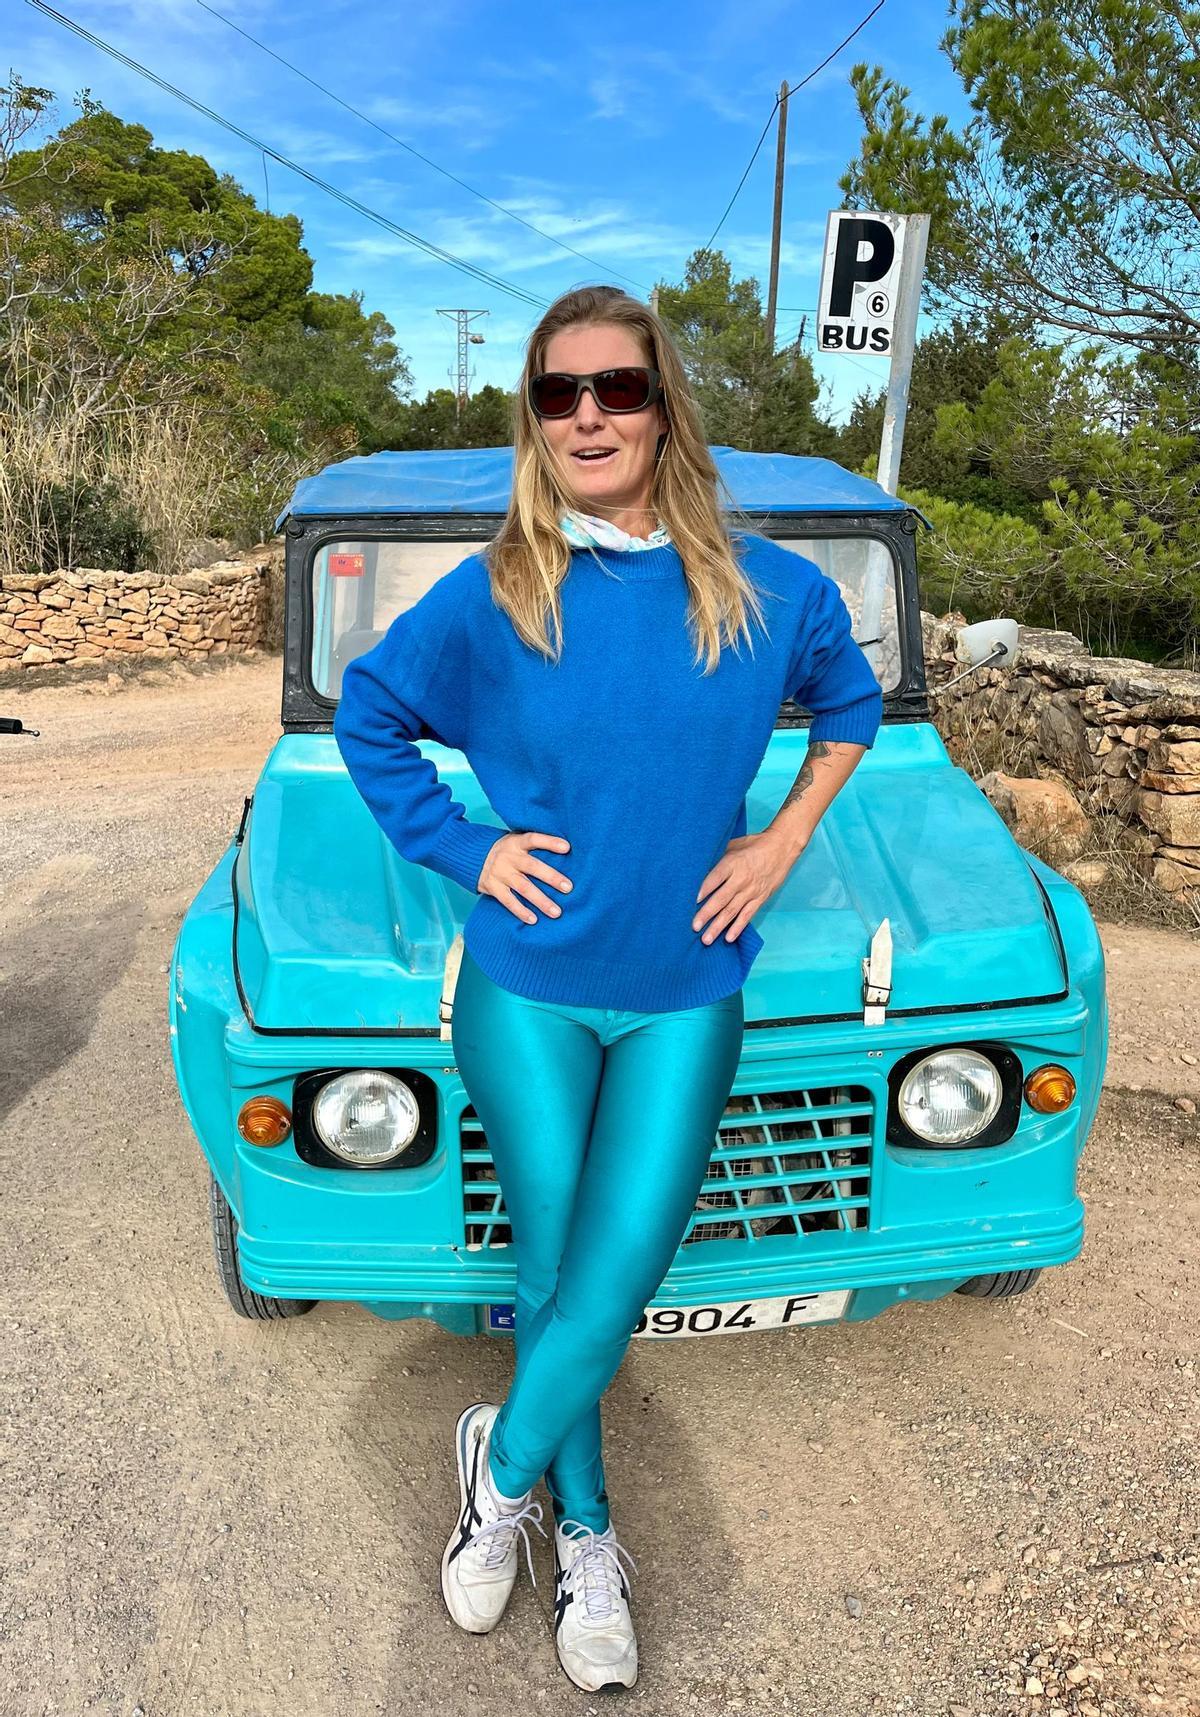 Pamela Spitz gaudint d’un dia a Formentera